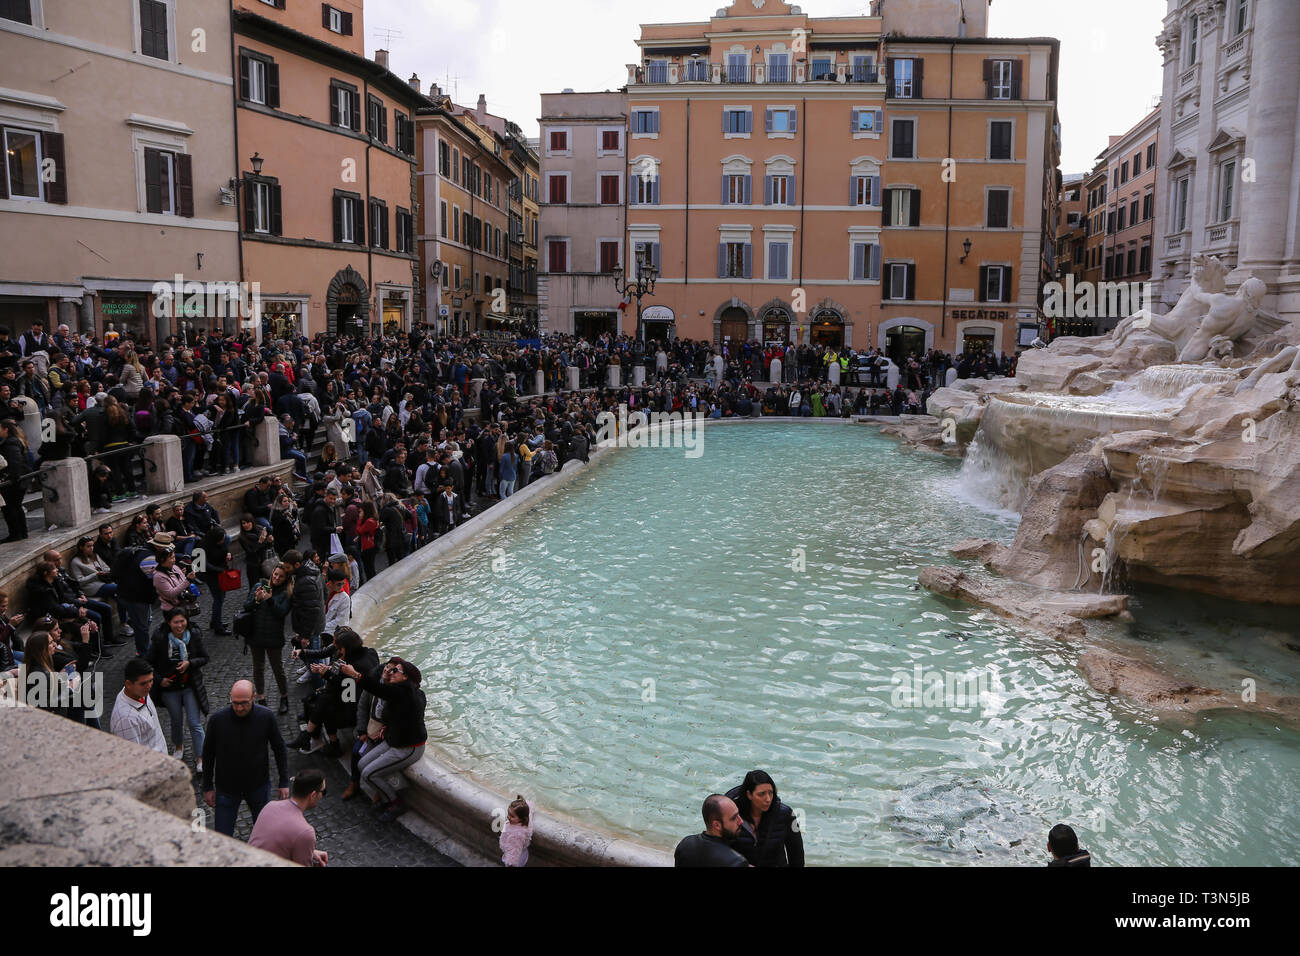 Les foules se rassemblent autour de la fontaine de Trevi (Fontana di Trevi) dans le centre de Rome, Italie Banque D'Images